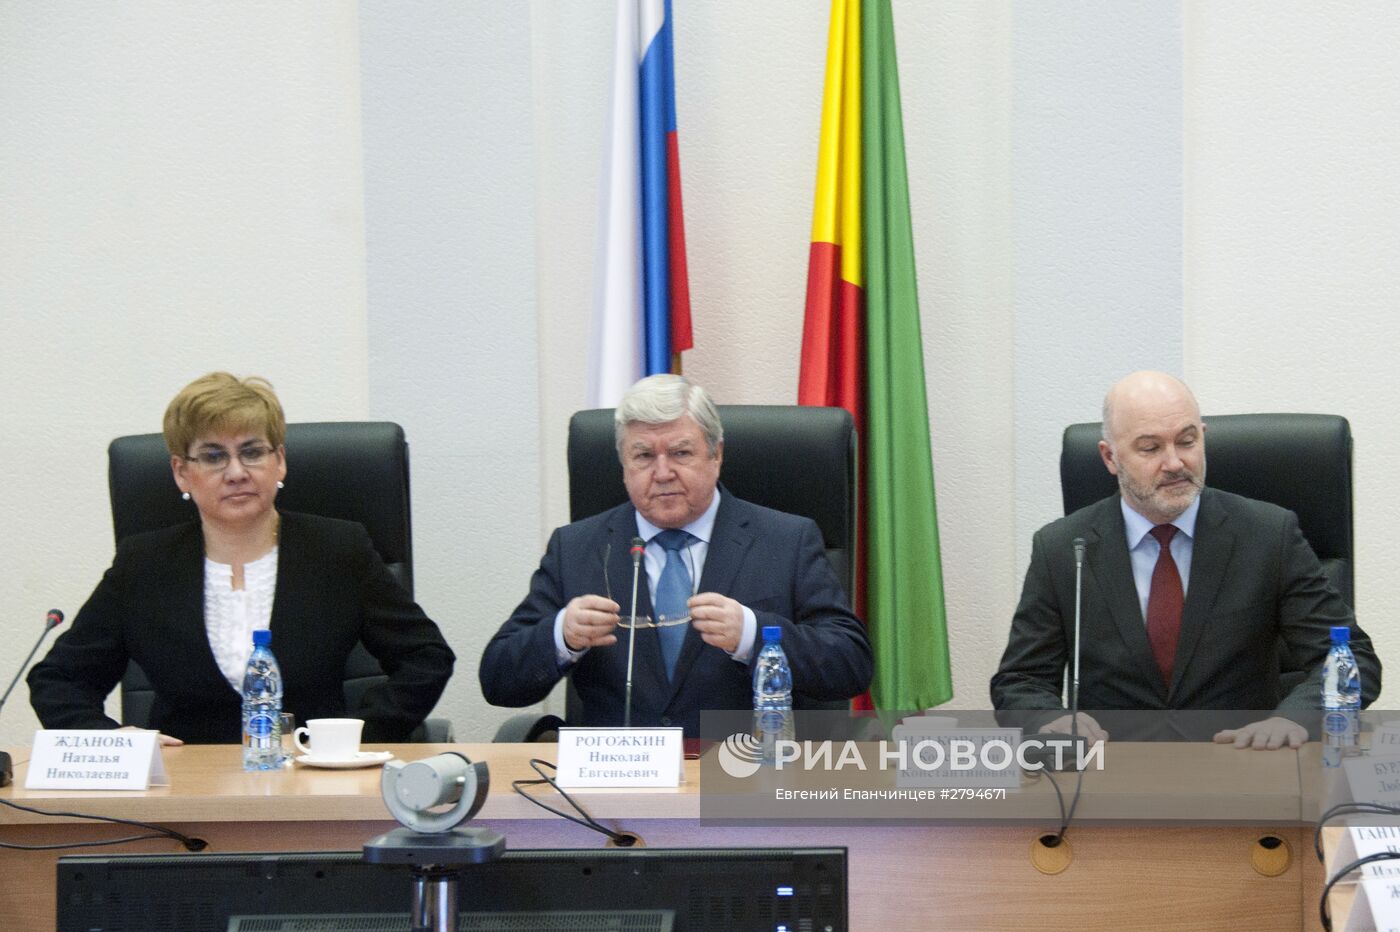 И.о. губернатора Забайкальского края Наталья Жданова представлена законодательной и исполнительной власти региона